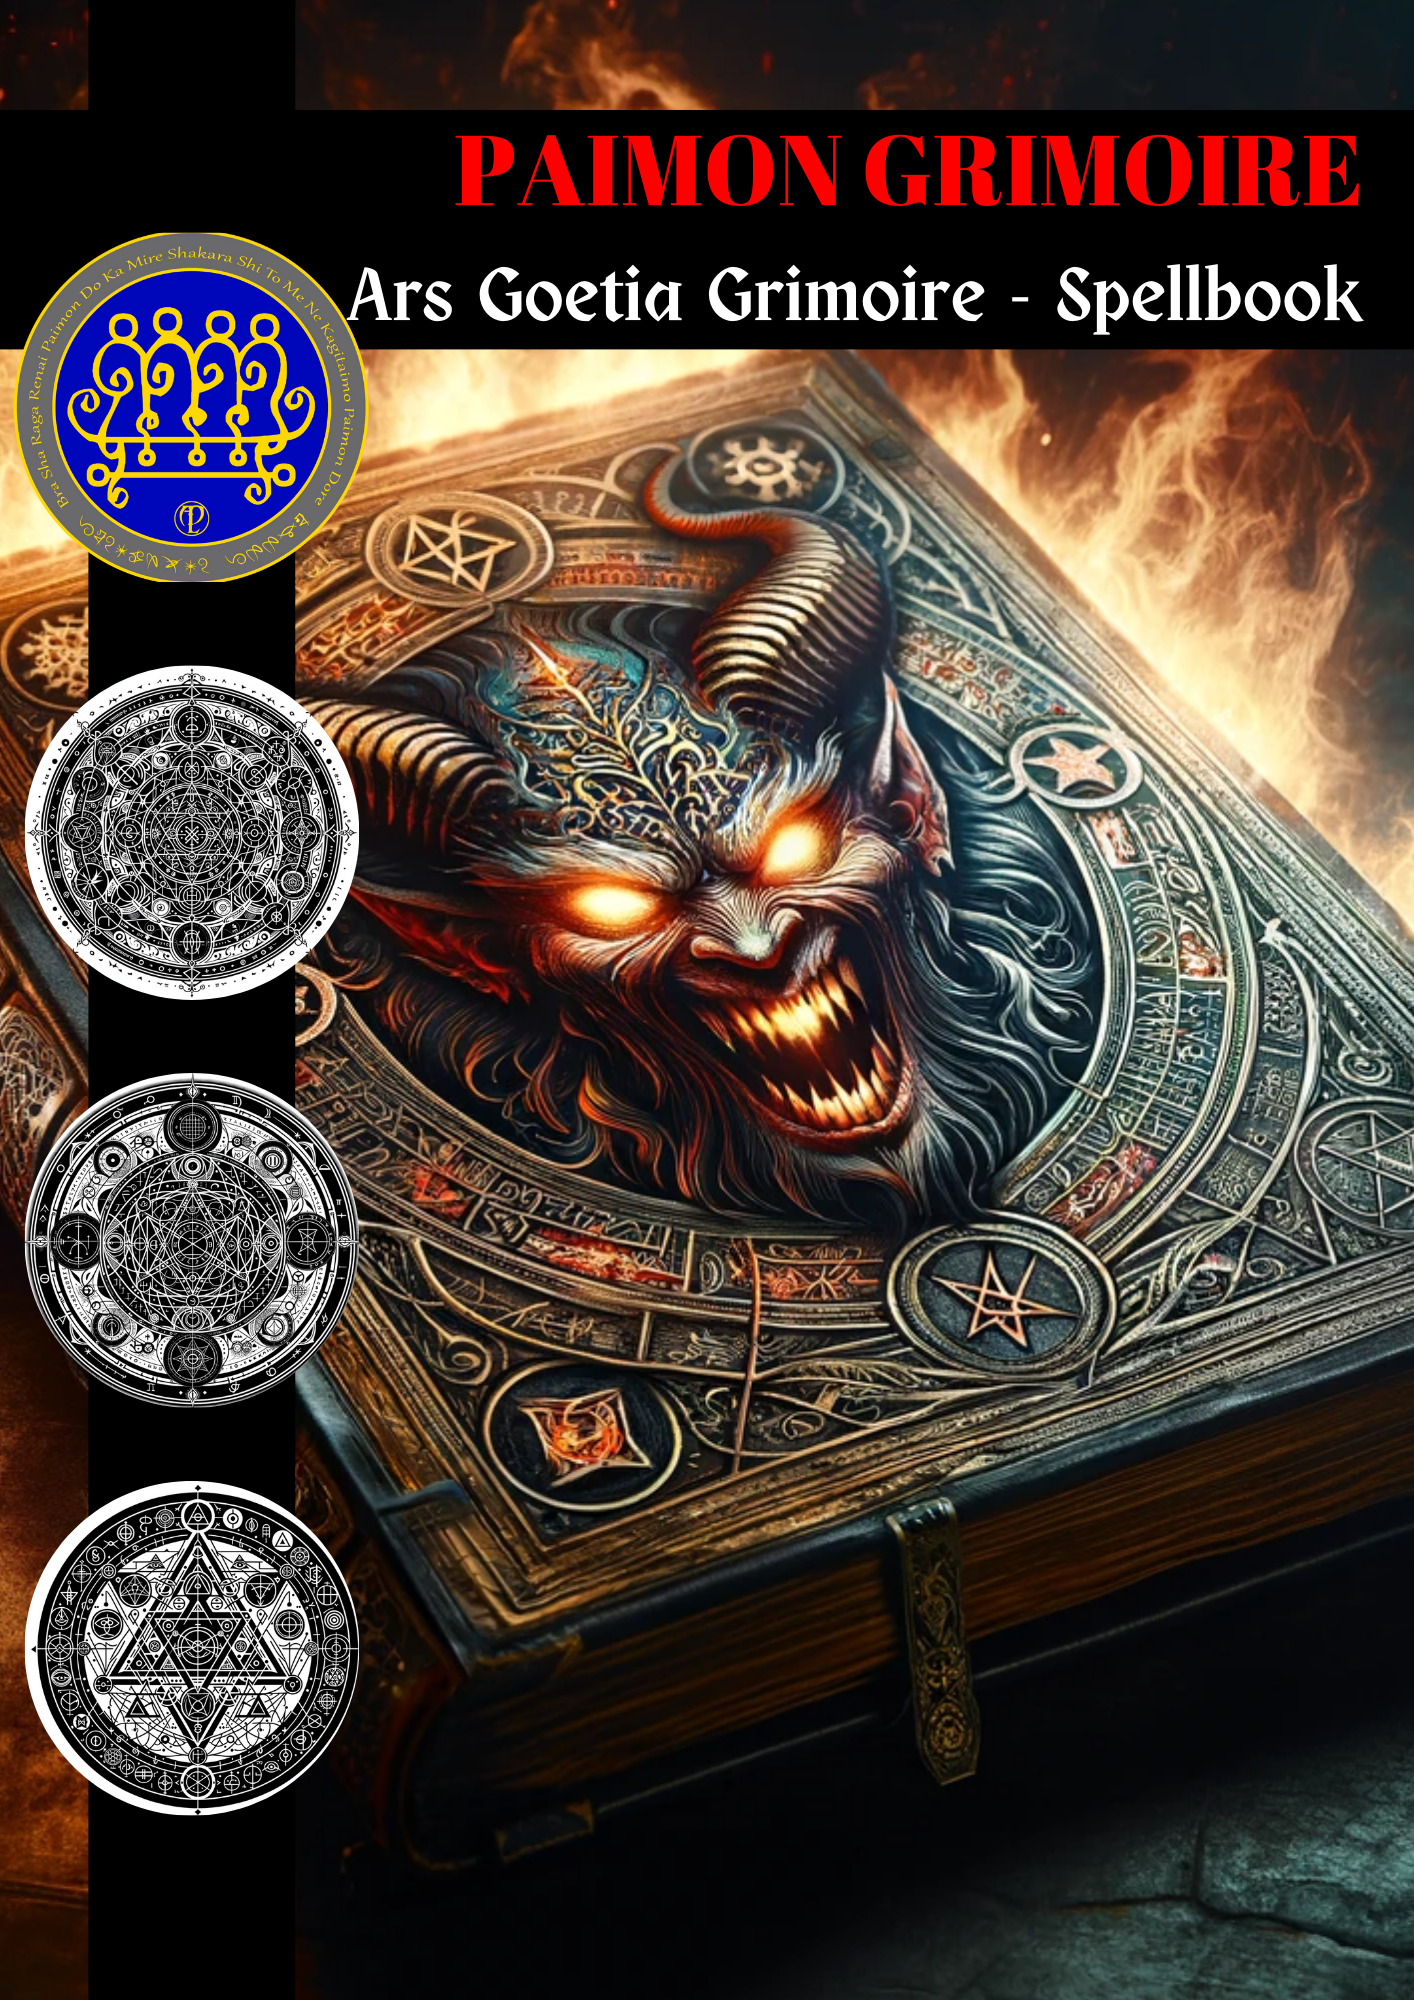 Grimoire of Paimon Phép thuật & Nghi lễ Grimoire để lập kế hoạch, ràng buộc, hiểu biết huyền bí và các dự án mới - Abraxas Amulets ® Magic ♾️ Bùa hộ mệnh ♾️ Sáng kiến